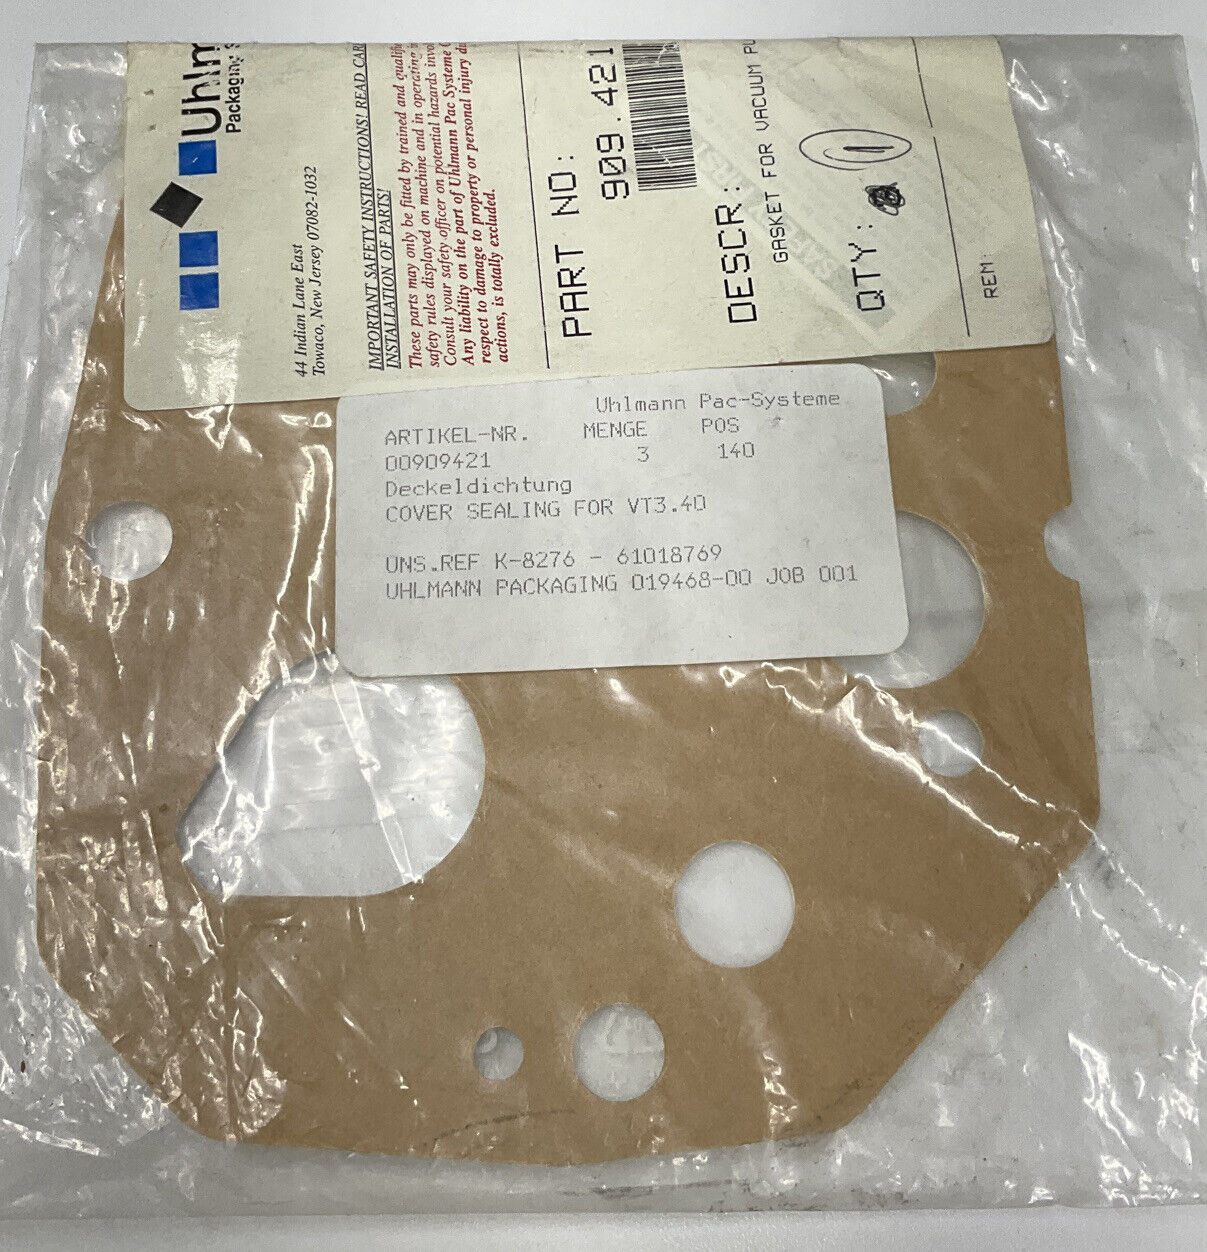 Uhlmann Packaging 909.421 / 00909421 Gasket for VT3.40 Pump (CL214)